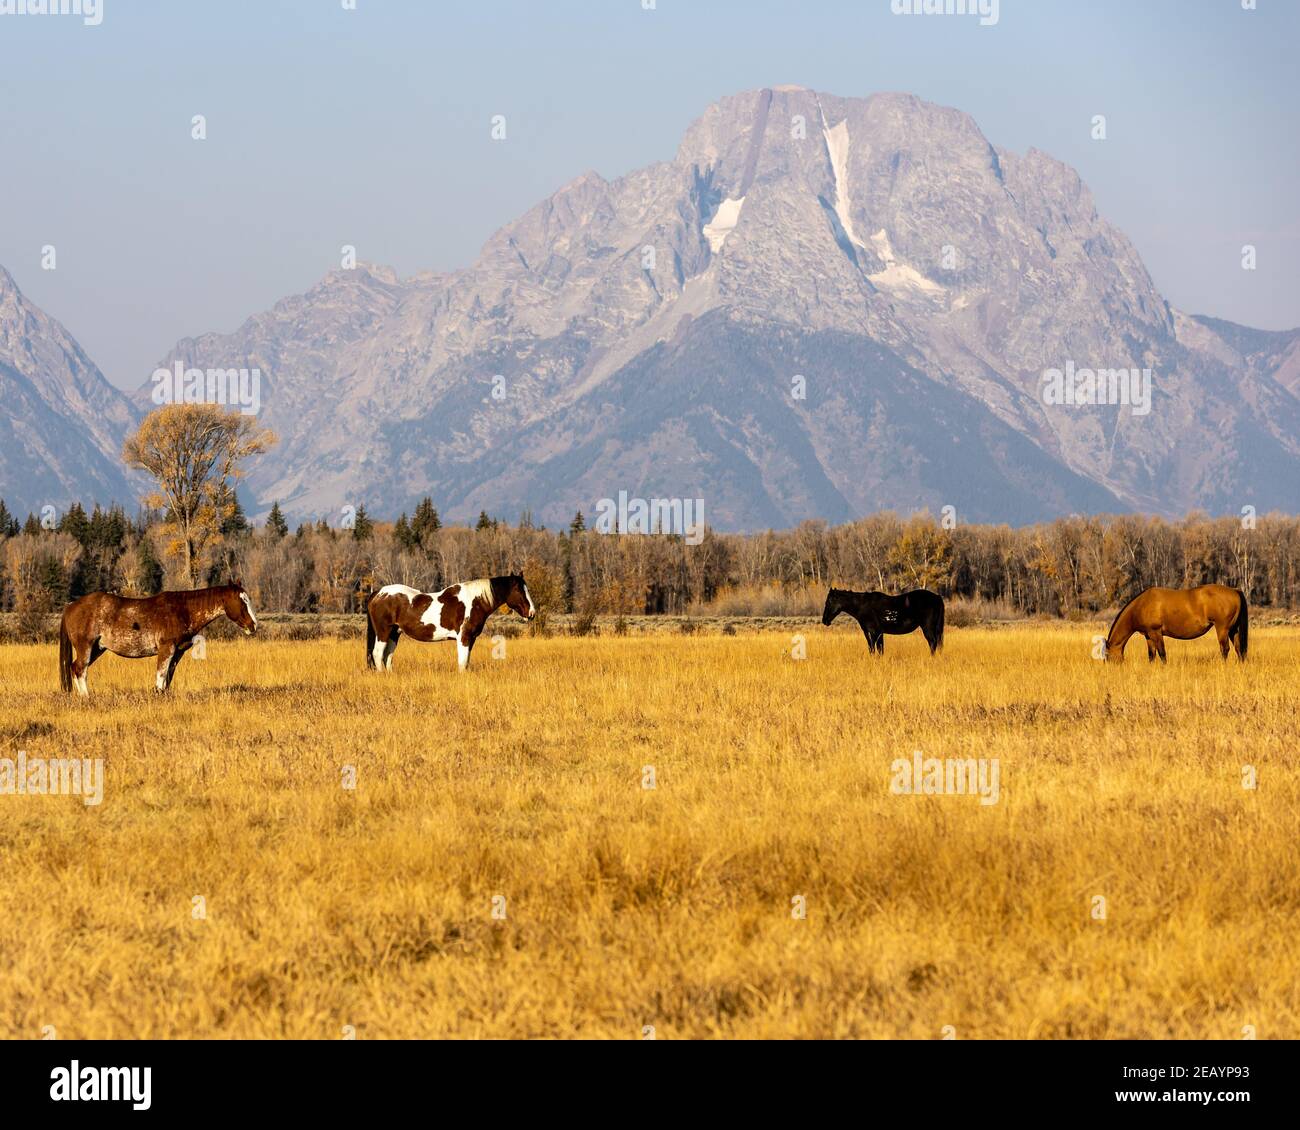 Les chevaux se broutent dans un pâturage ouvert près du parc national de Grand Teton, dans le Wyoming. Banque D'Images